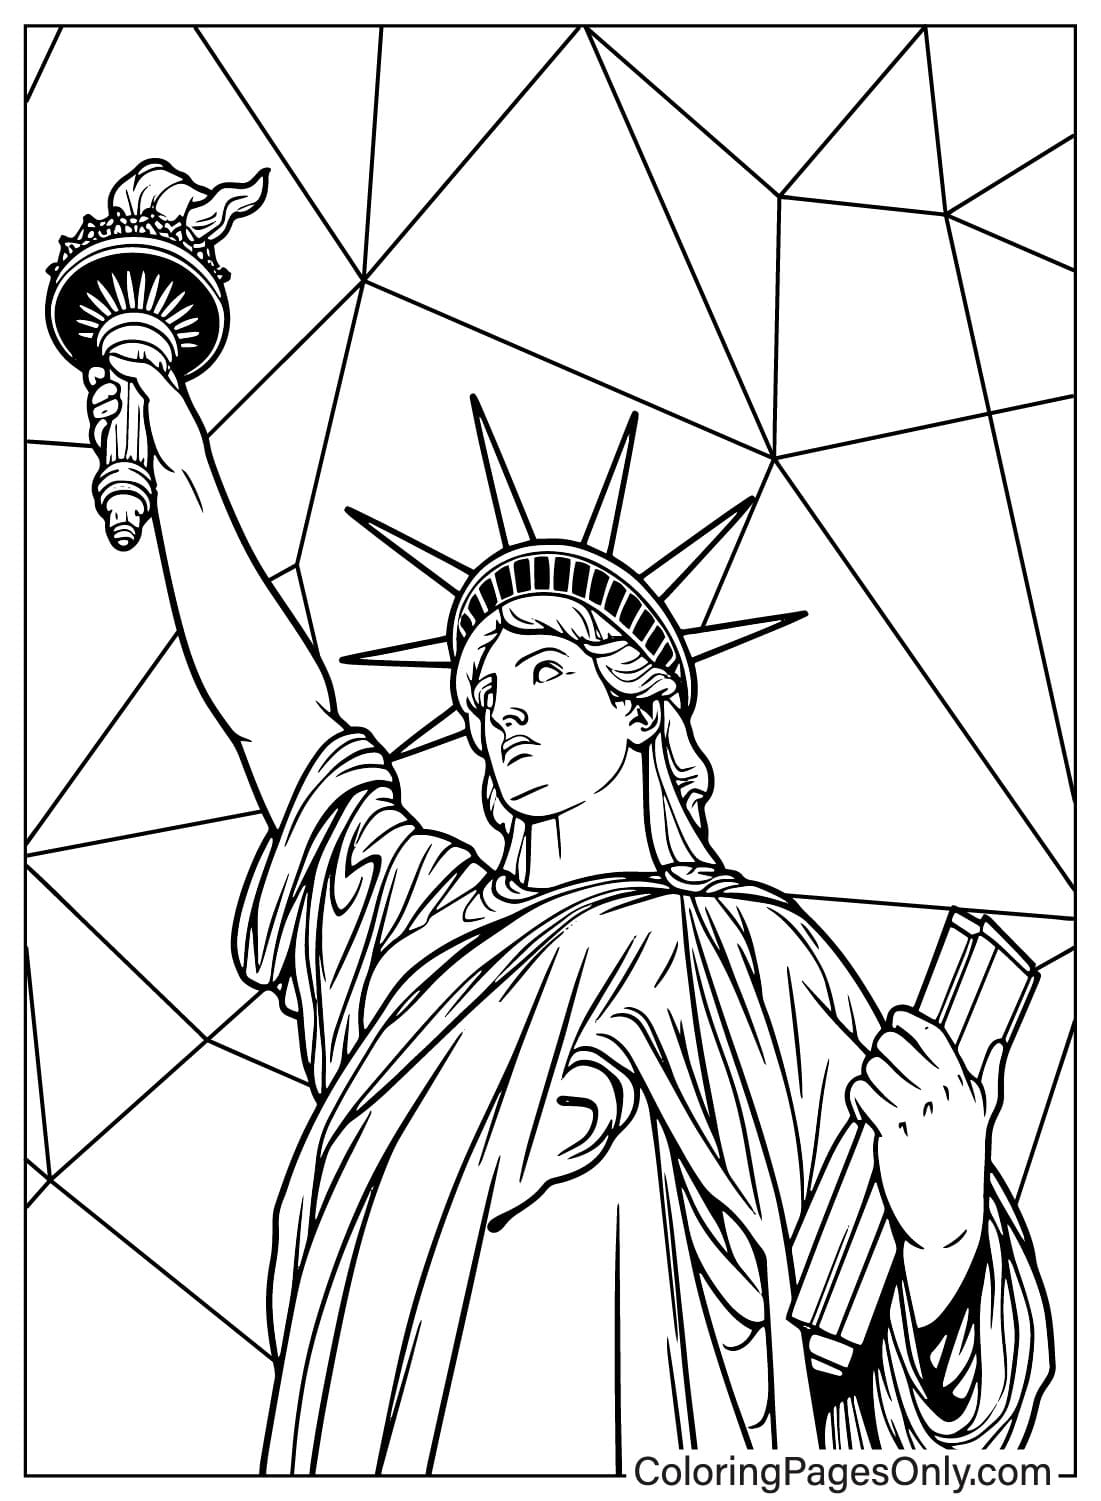 Páginas para colorear de la Estatua de la Libertad para imprimir gratis para niños